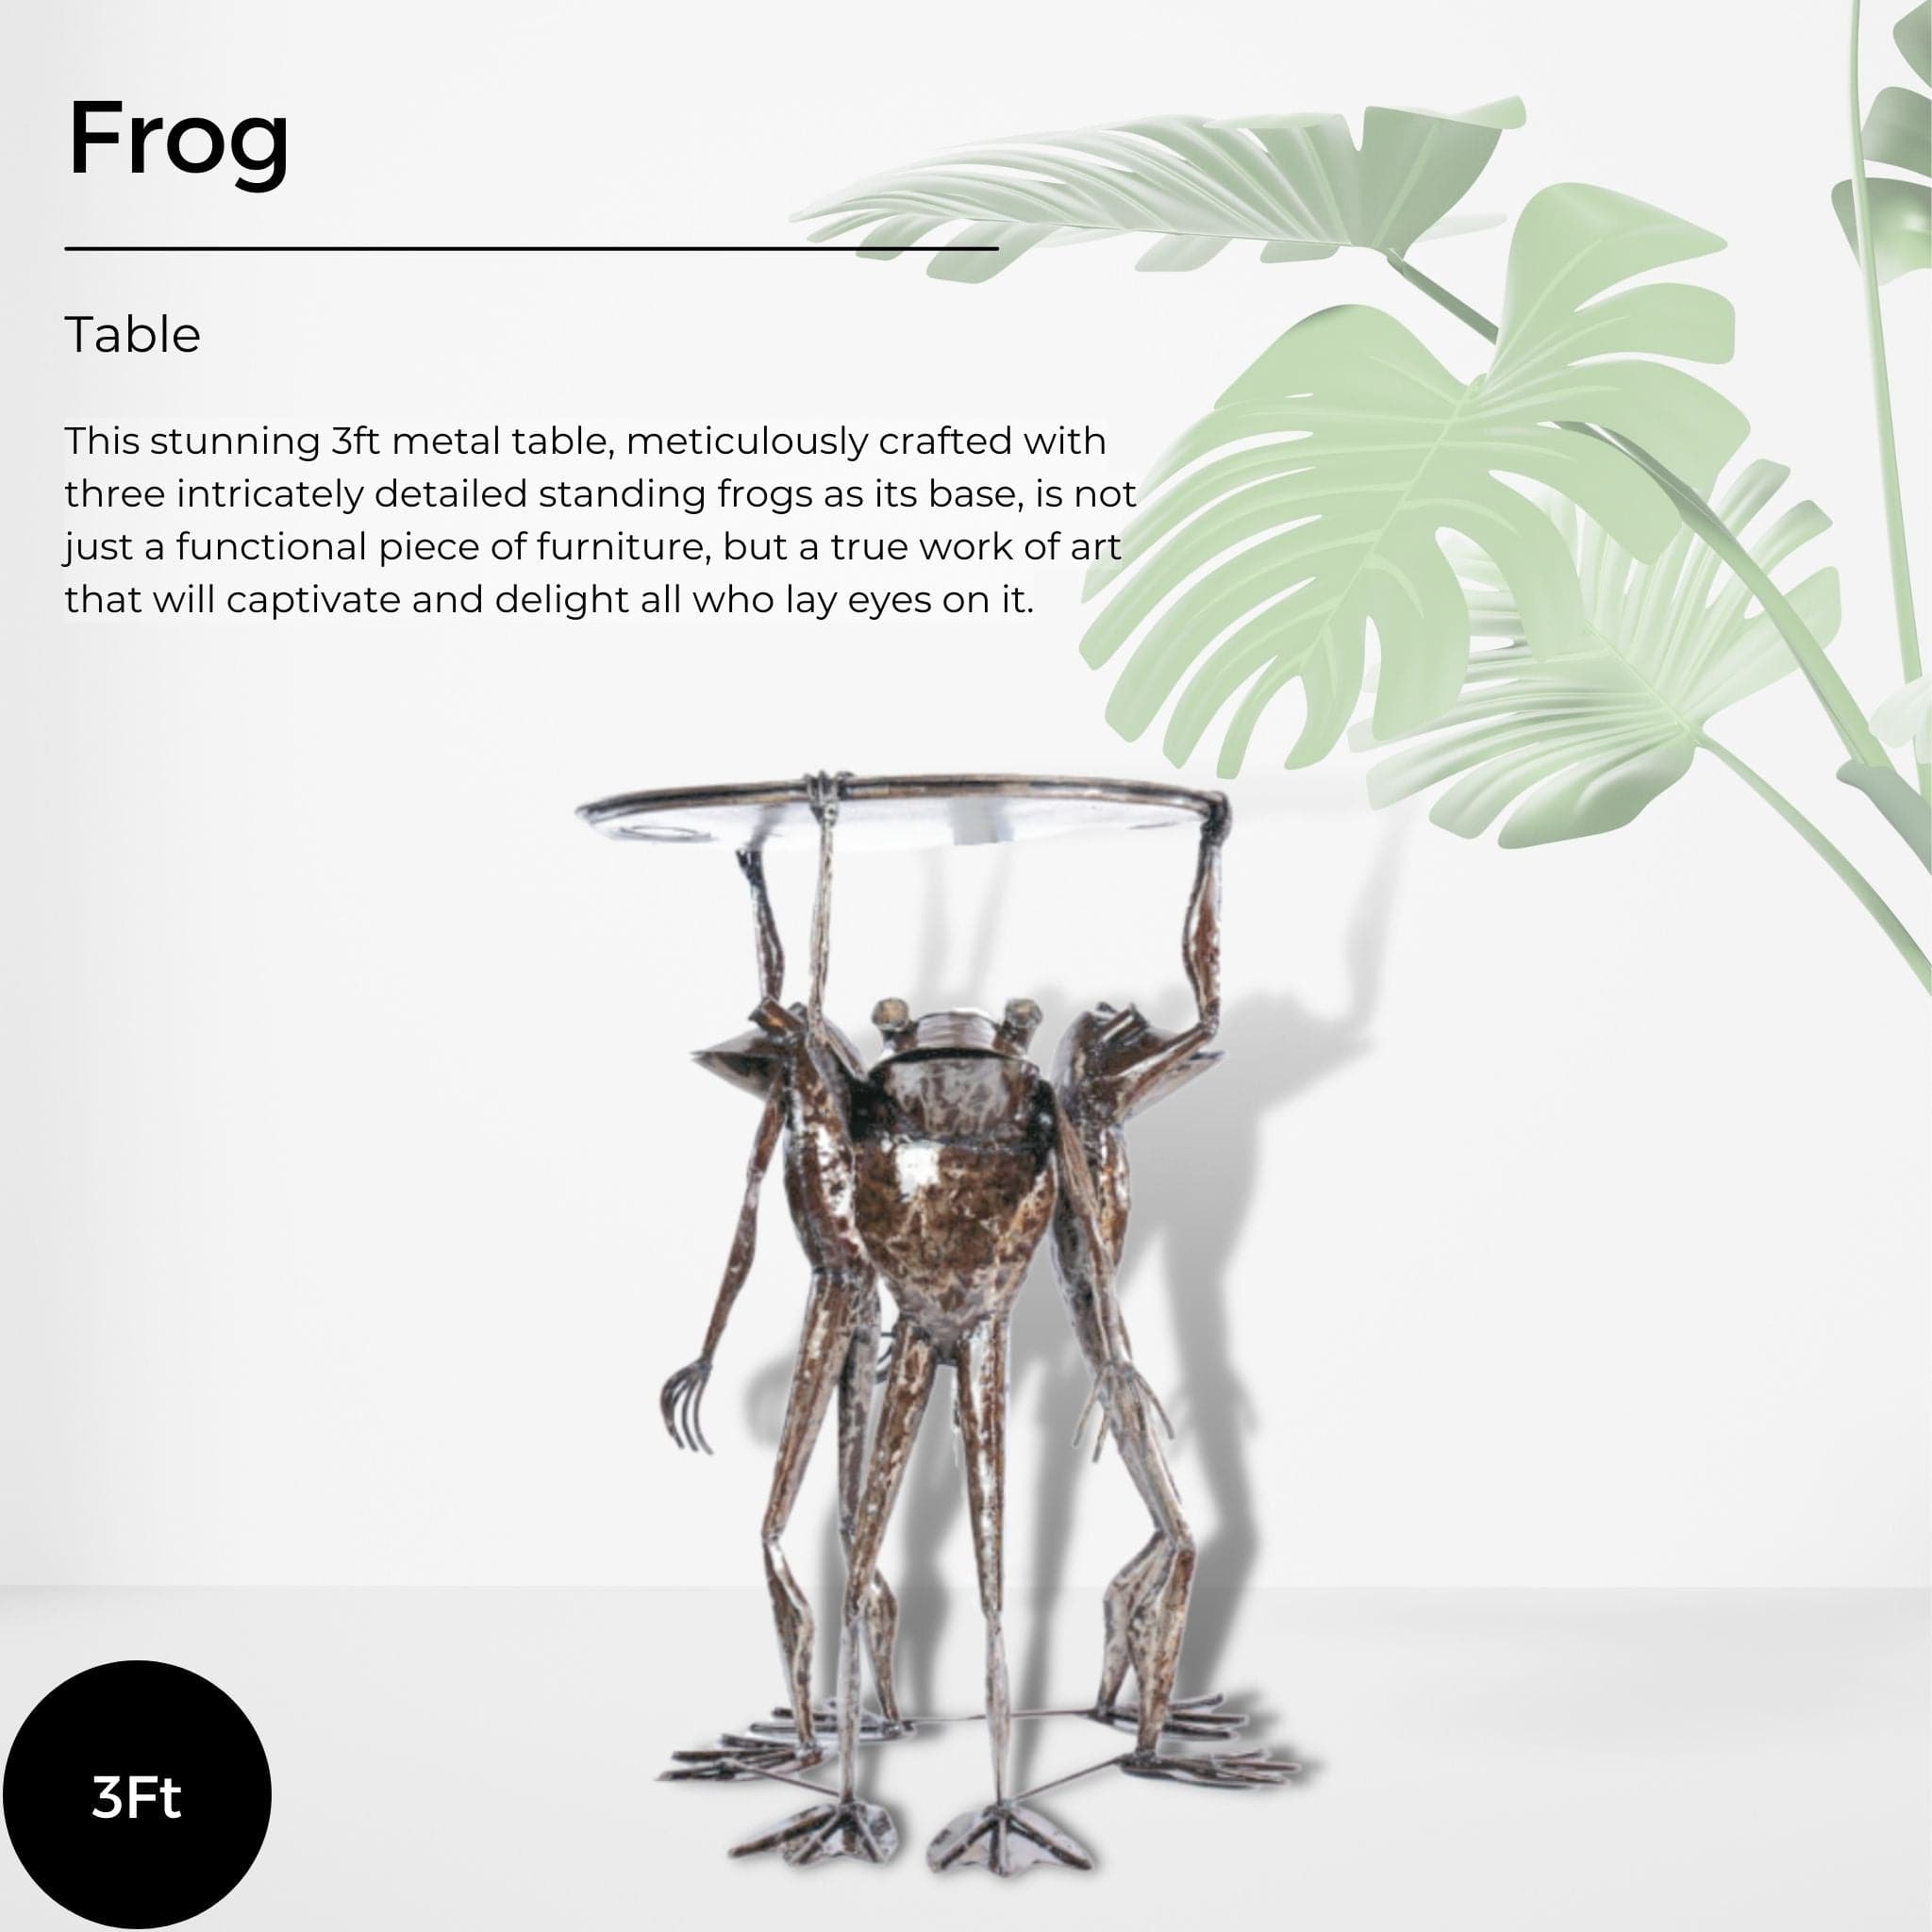 Frog Table - Pangea Sculptures